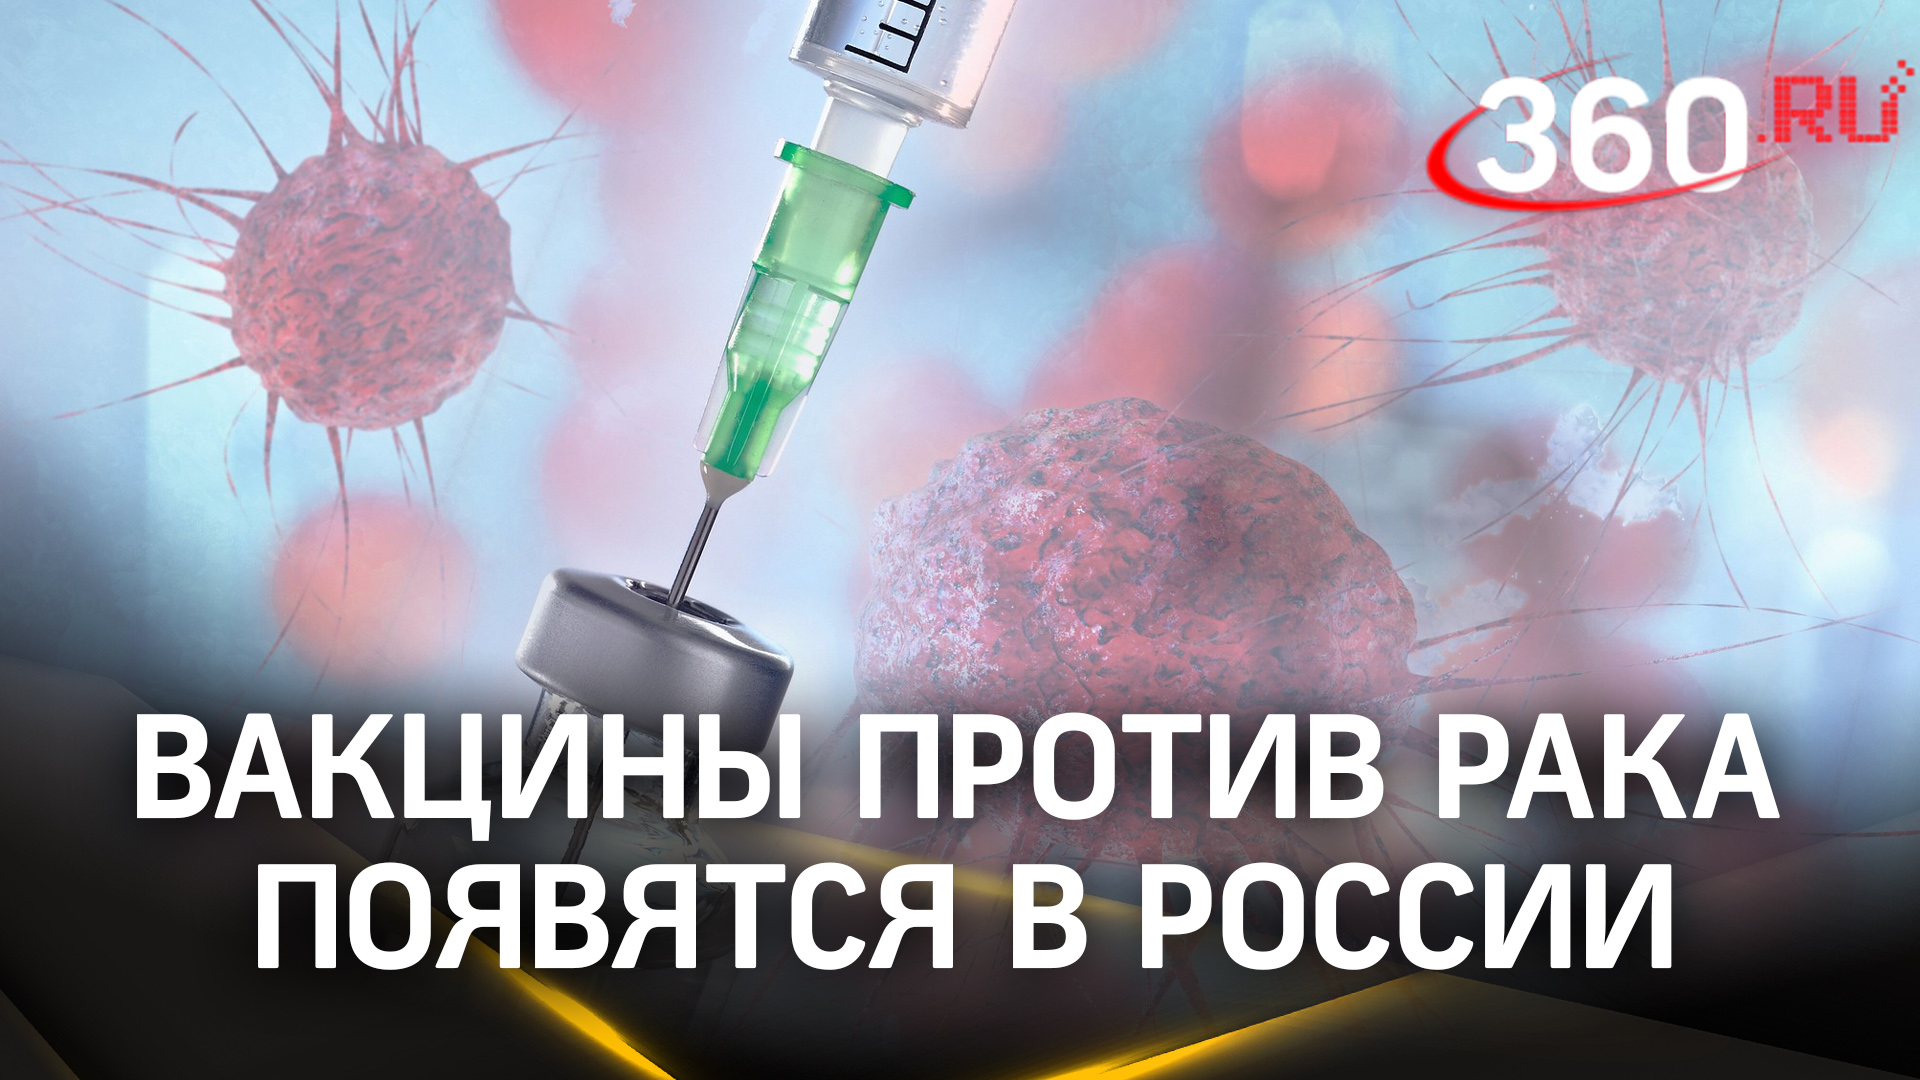 Вакцины против рака появятся в России. Кто и где сможет ими воспользоваться?